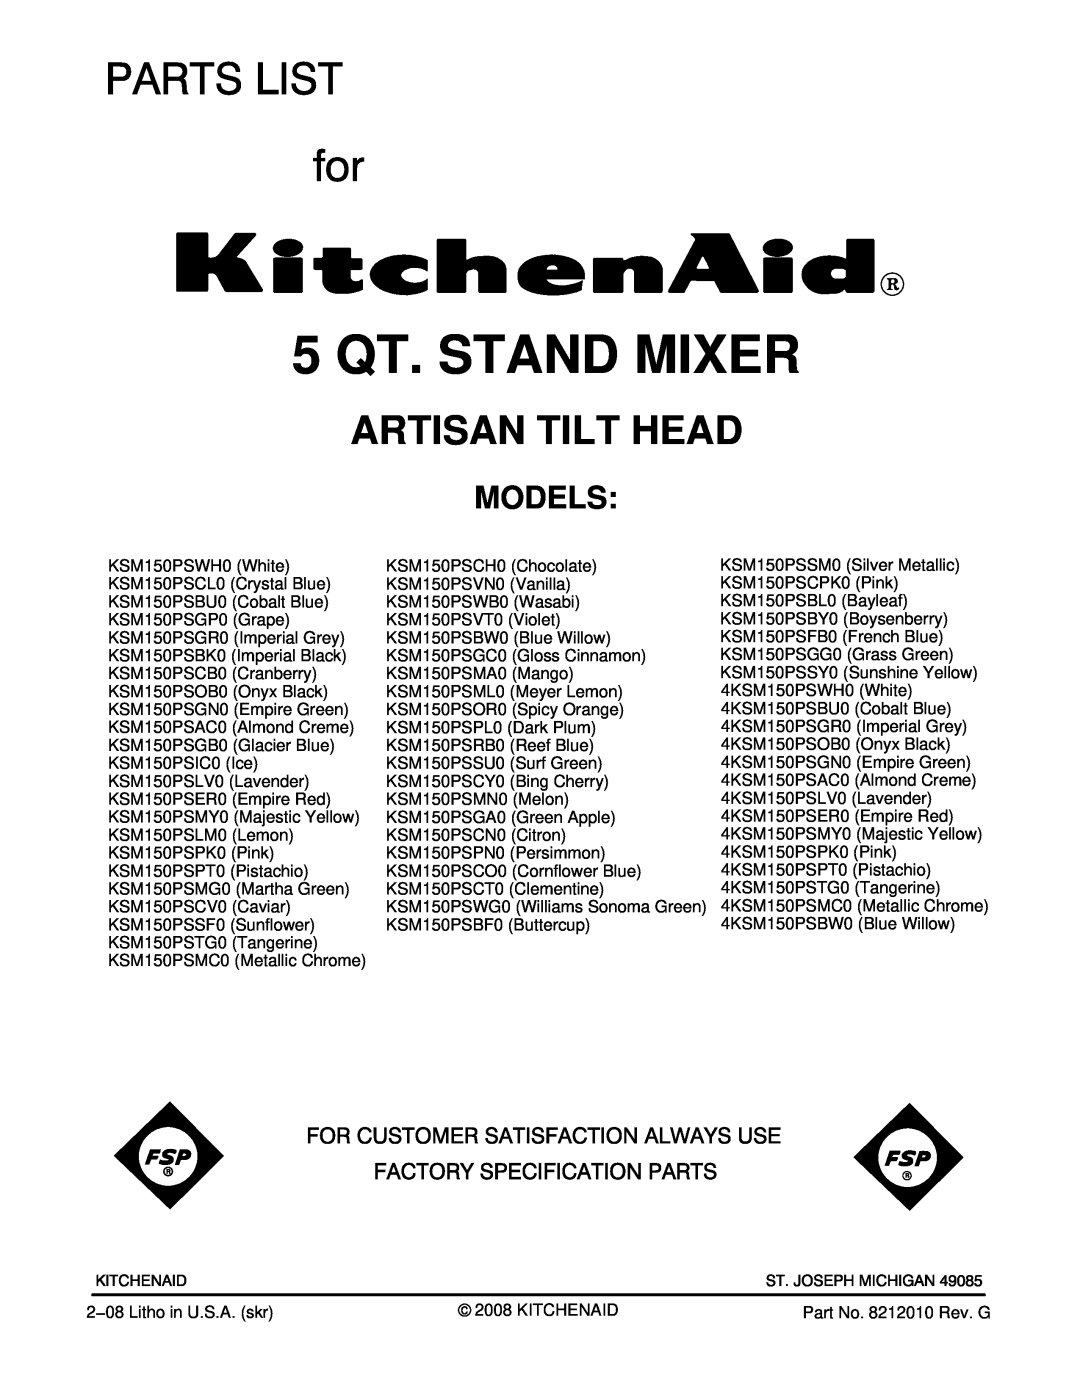 KitchenAid KSM150PSOB0, KSM150PSWH0, KSM150PSGP0, KSM150PSGR0 manual Models, 5 QT. STAND MIXER, Artisan Tilt Head 